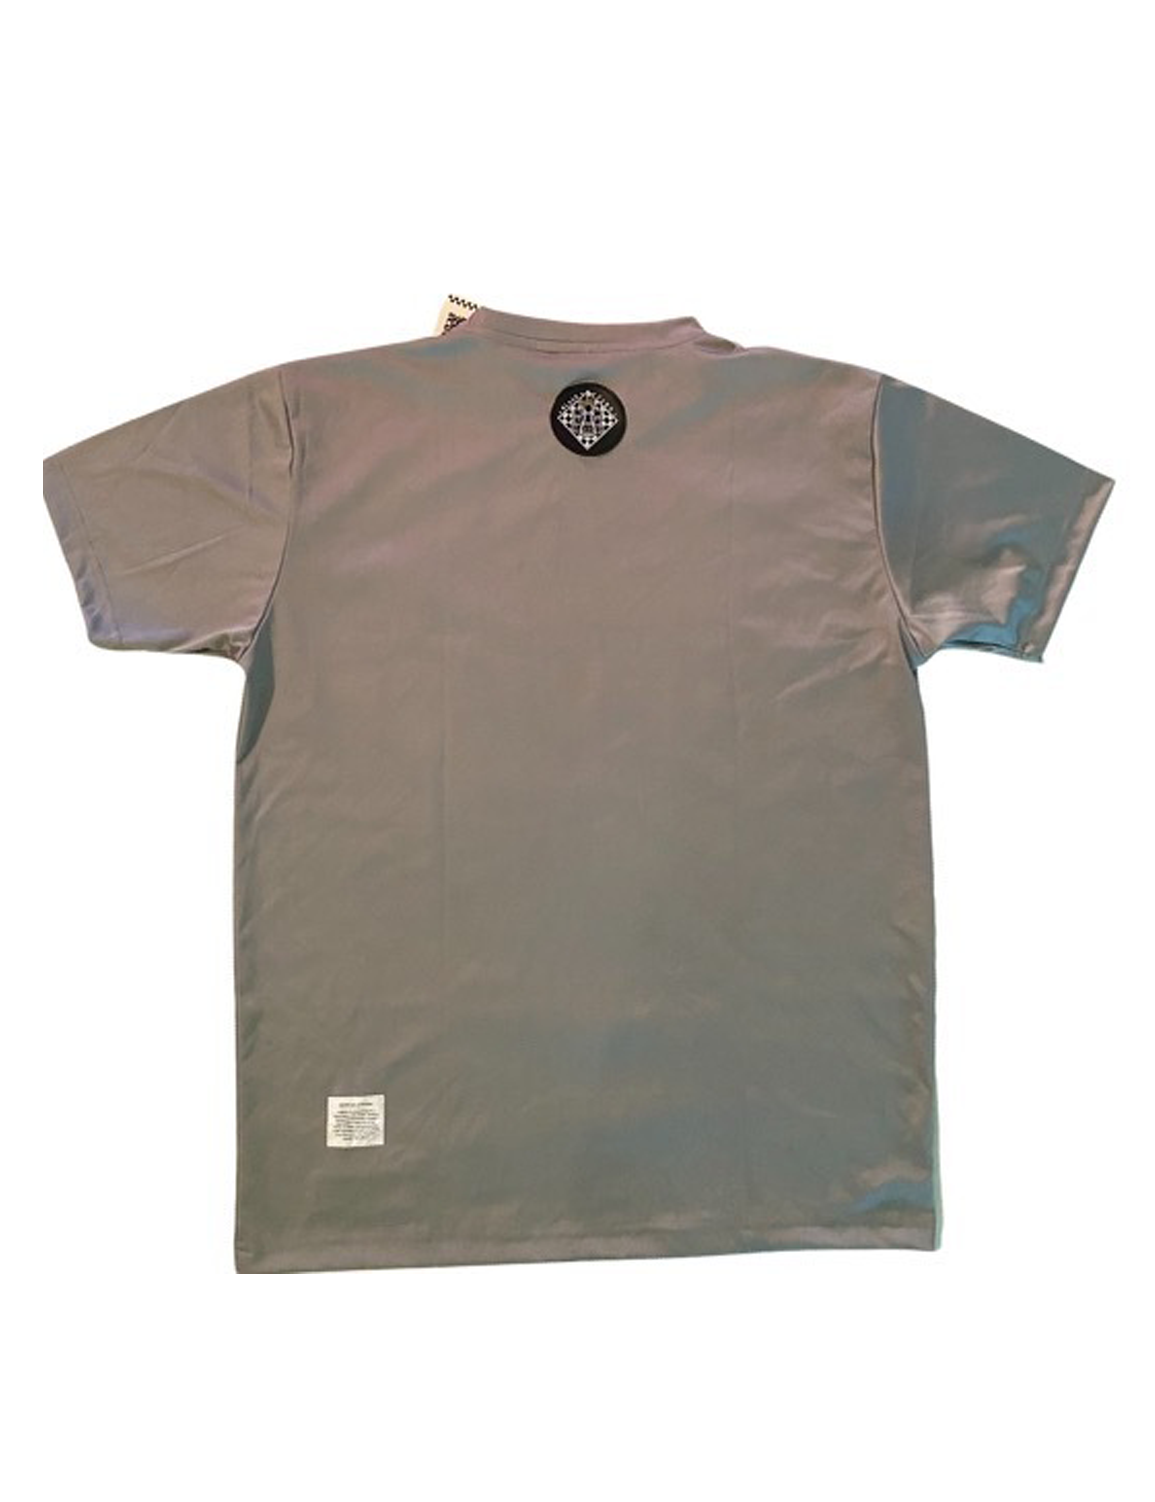 BPG Pawn Grey Shirt (medium)